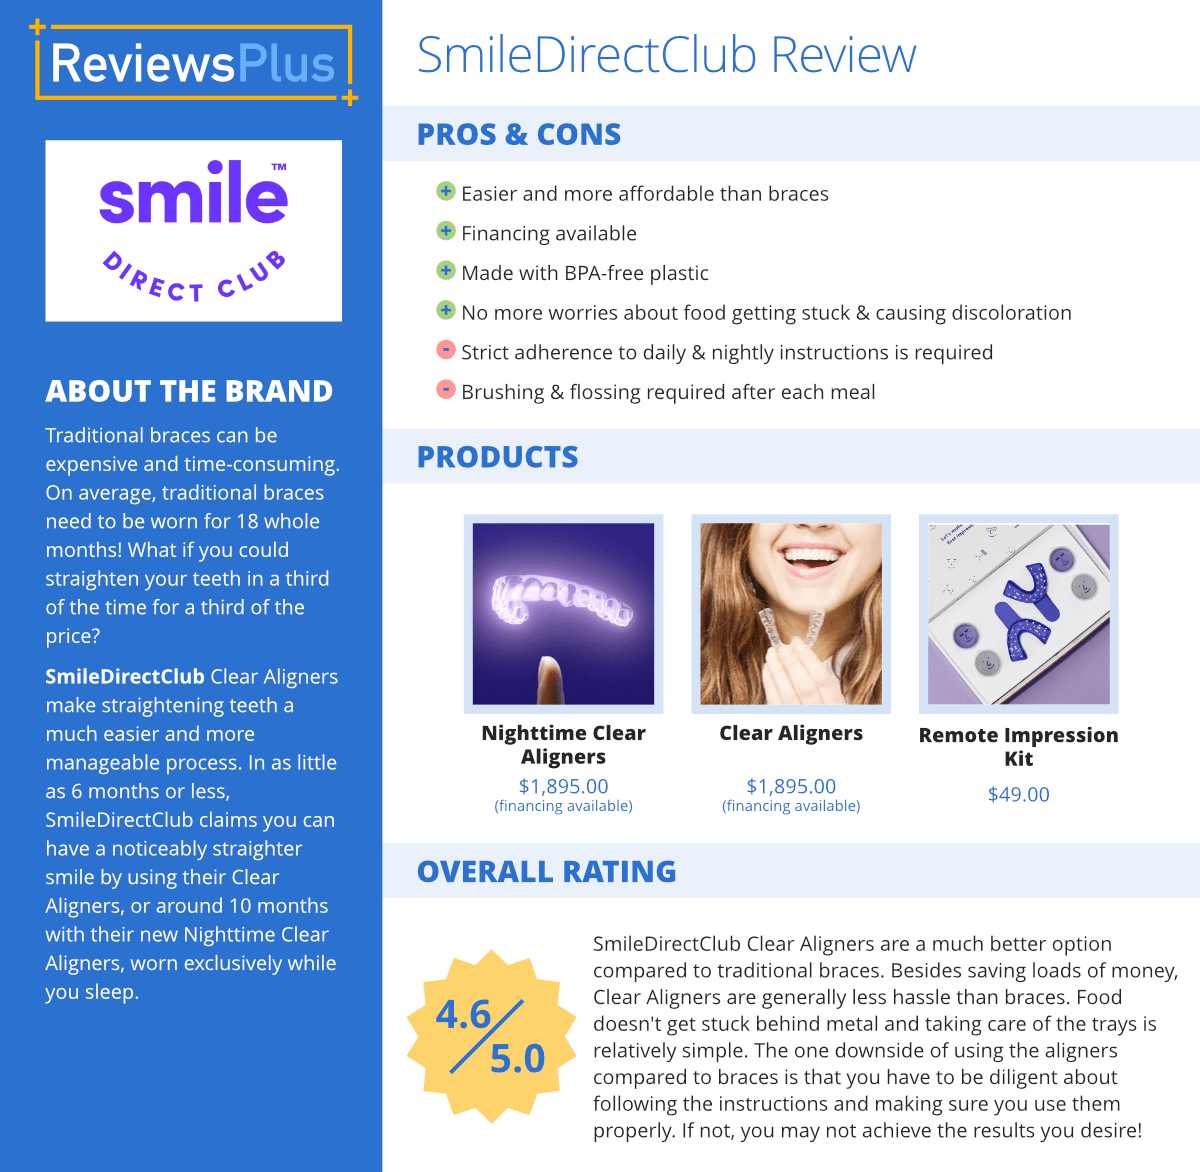 smiledirectclub review